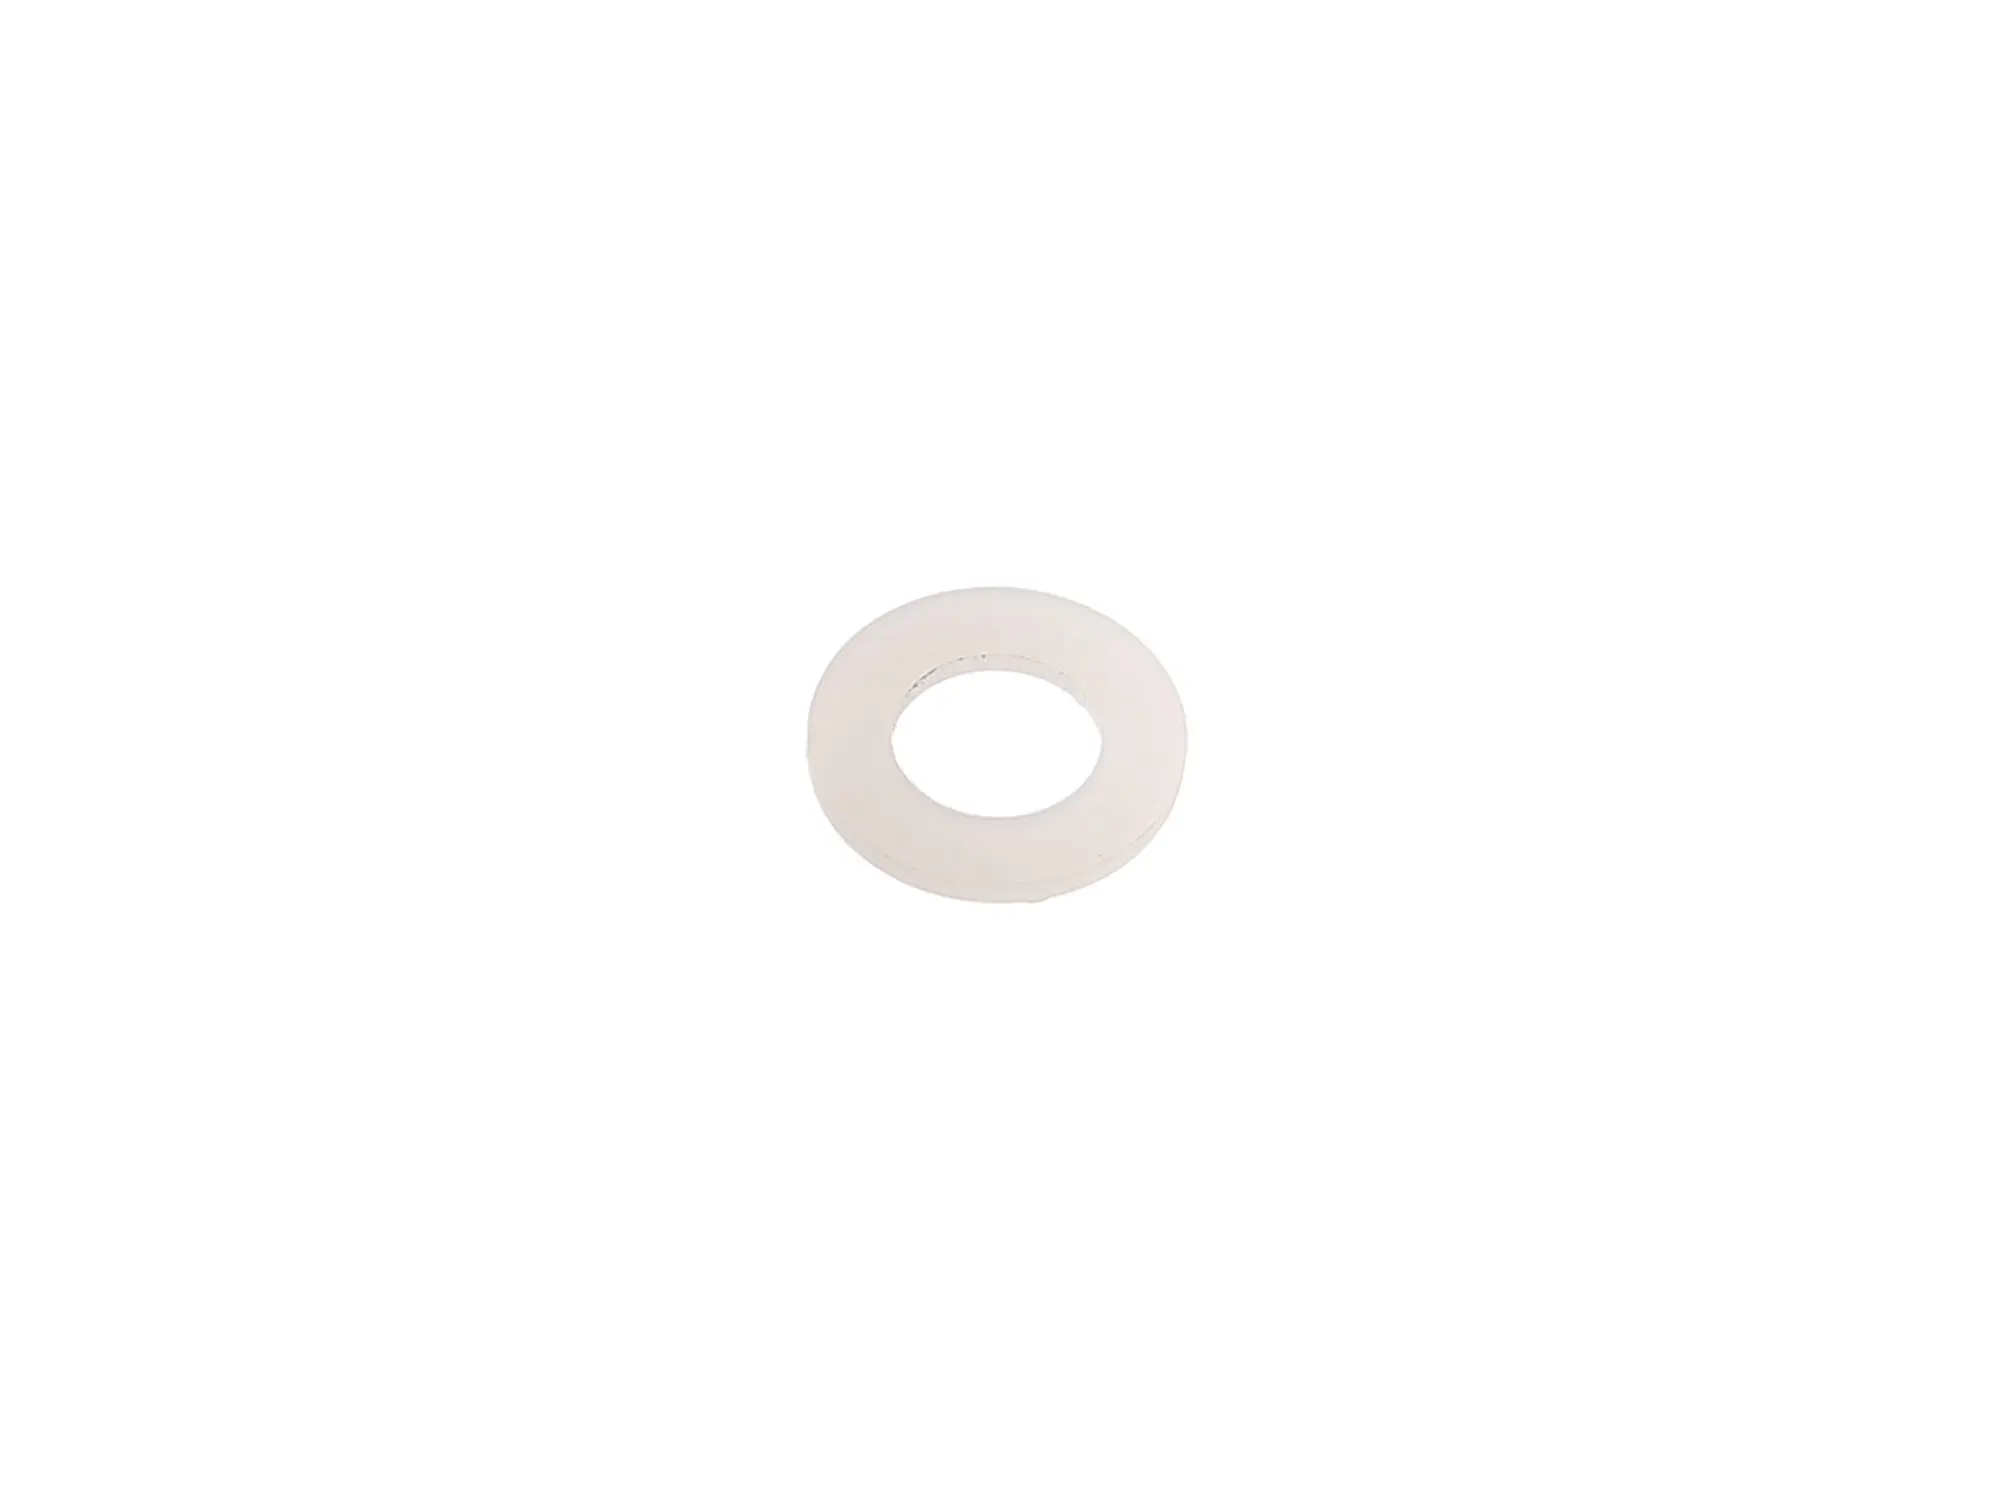 Scheibe Emico 5,3x10x1 - helle Plastikscheibe, Art.-Nr.: 10061394 - Bild 1